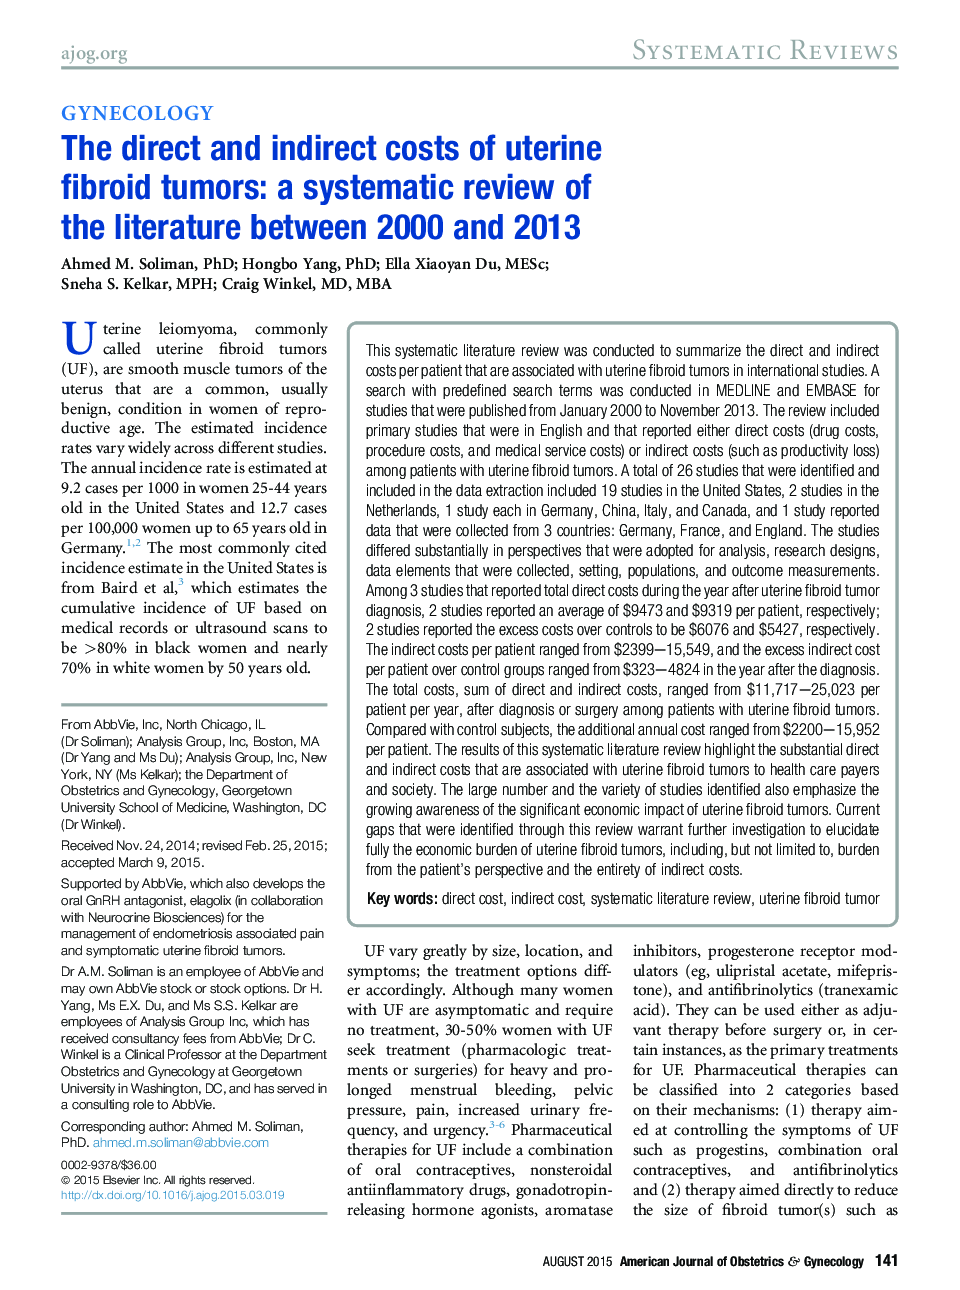 هزینه های مستقیم و غیر مستقیم تومورهای فیبروئید رحم: بررسی سیستماتیک از ادبیات بین سالهای 2000 تا 2013 است 